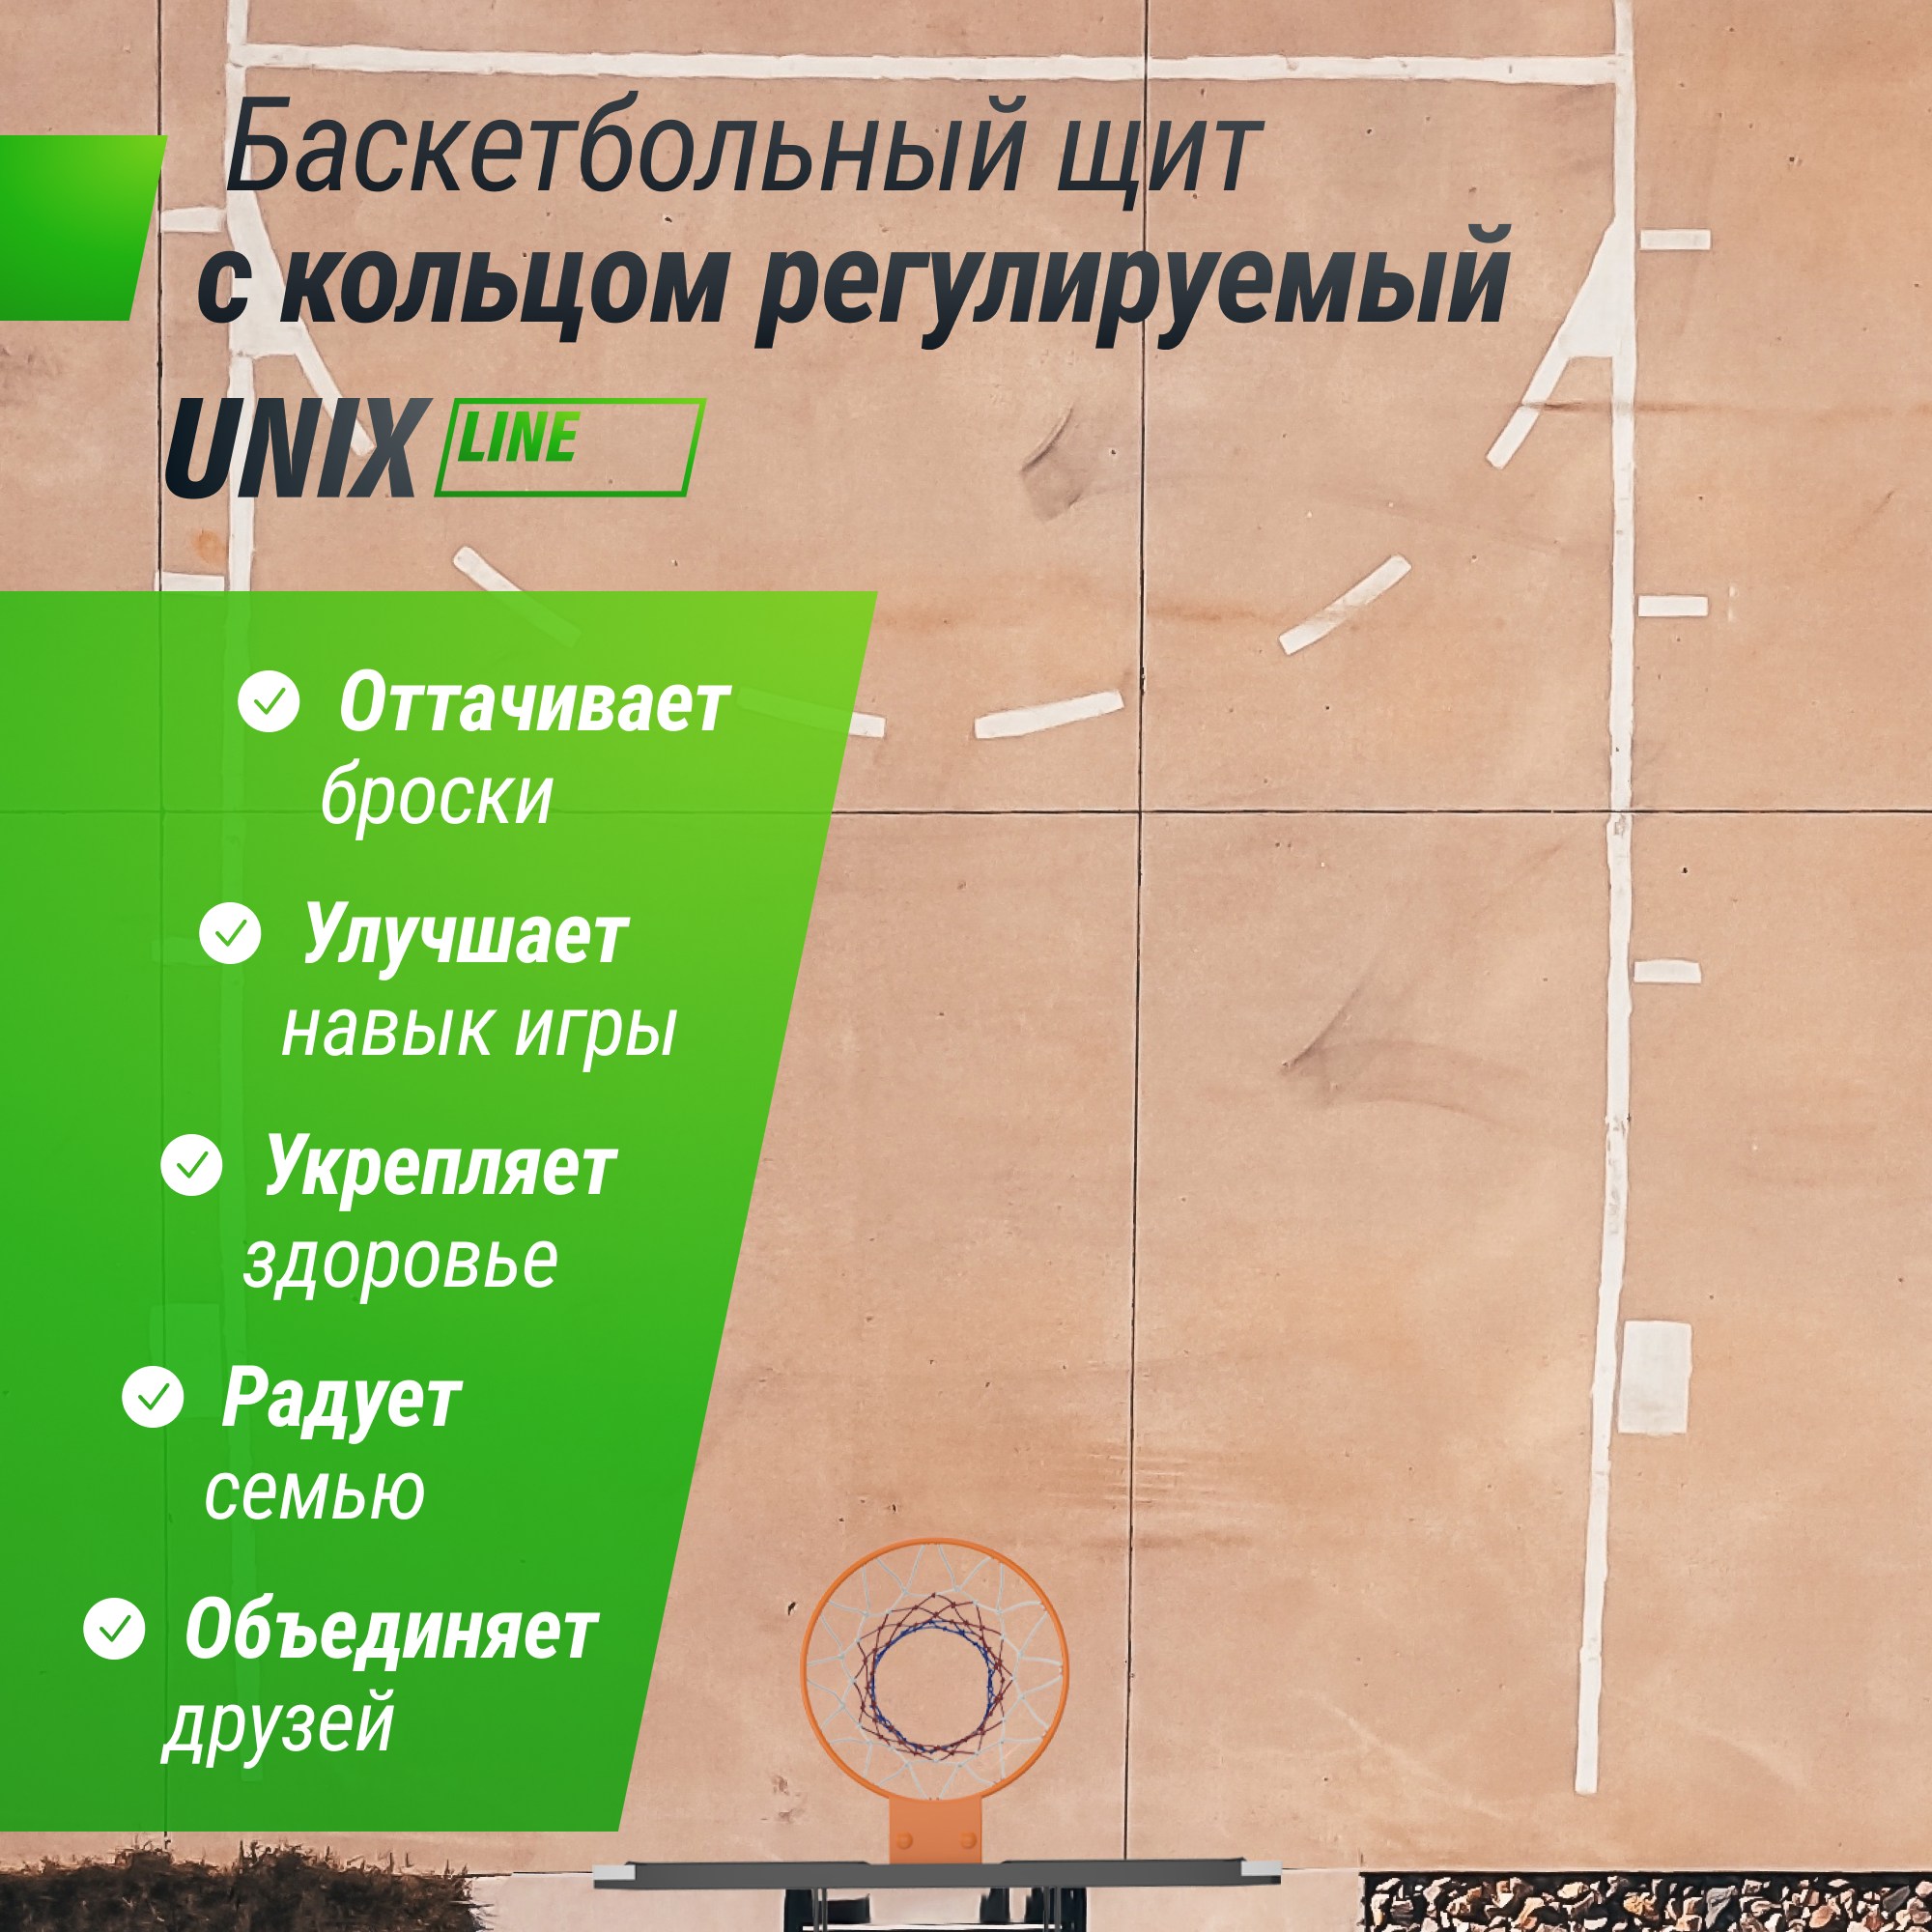 Баскетбольный щит регулируемый Unix Line B-Backboard-PC 50"x32" R45 BSBS50APCBK 2000_2000